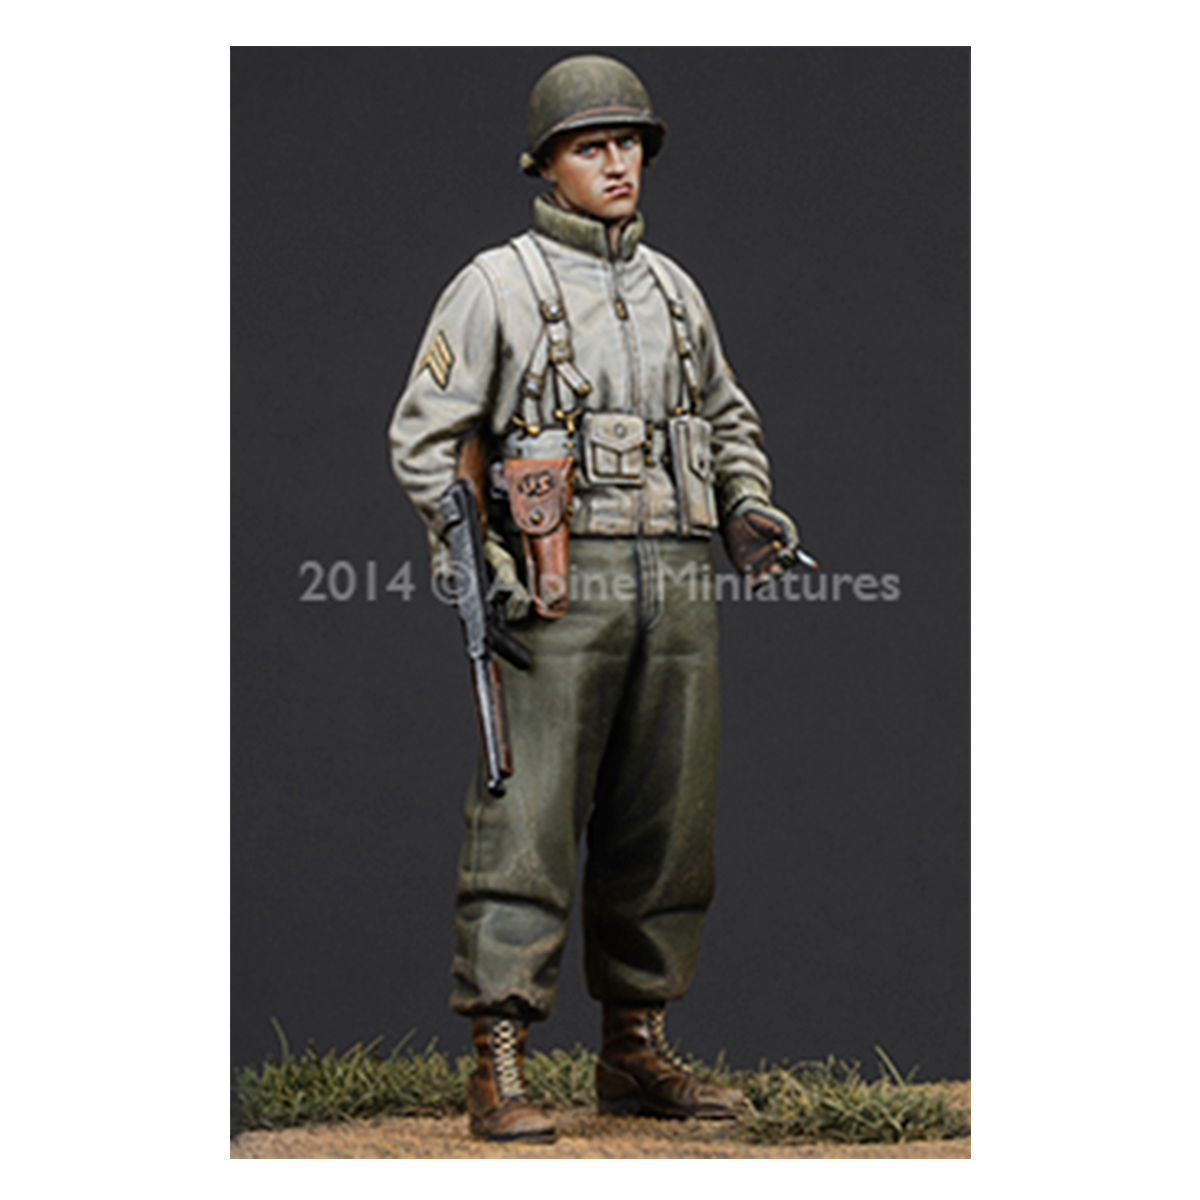 Alpine Miniatures – WW2 US Infantry NCO 1/35